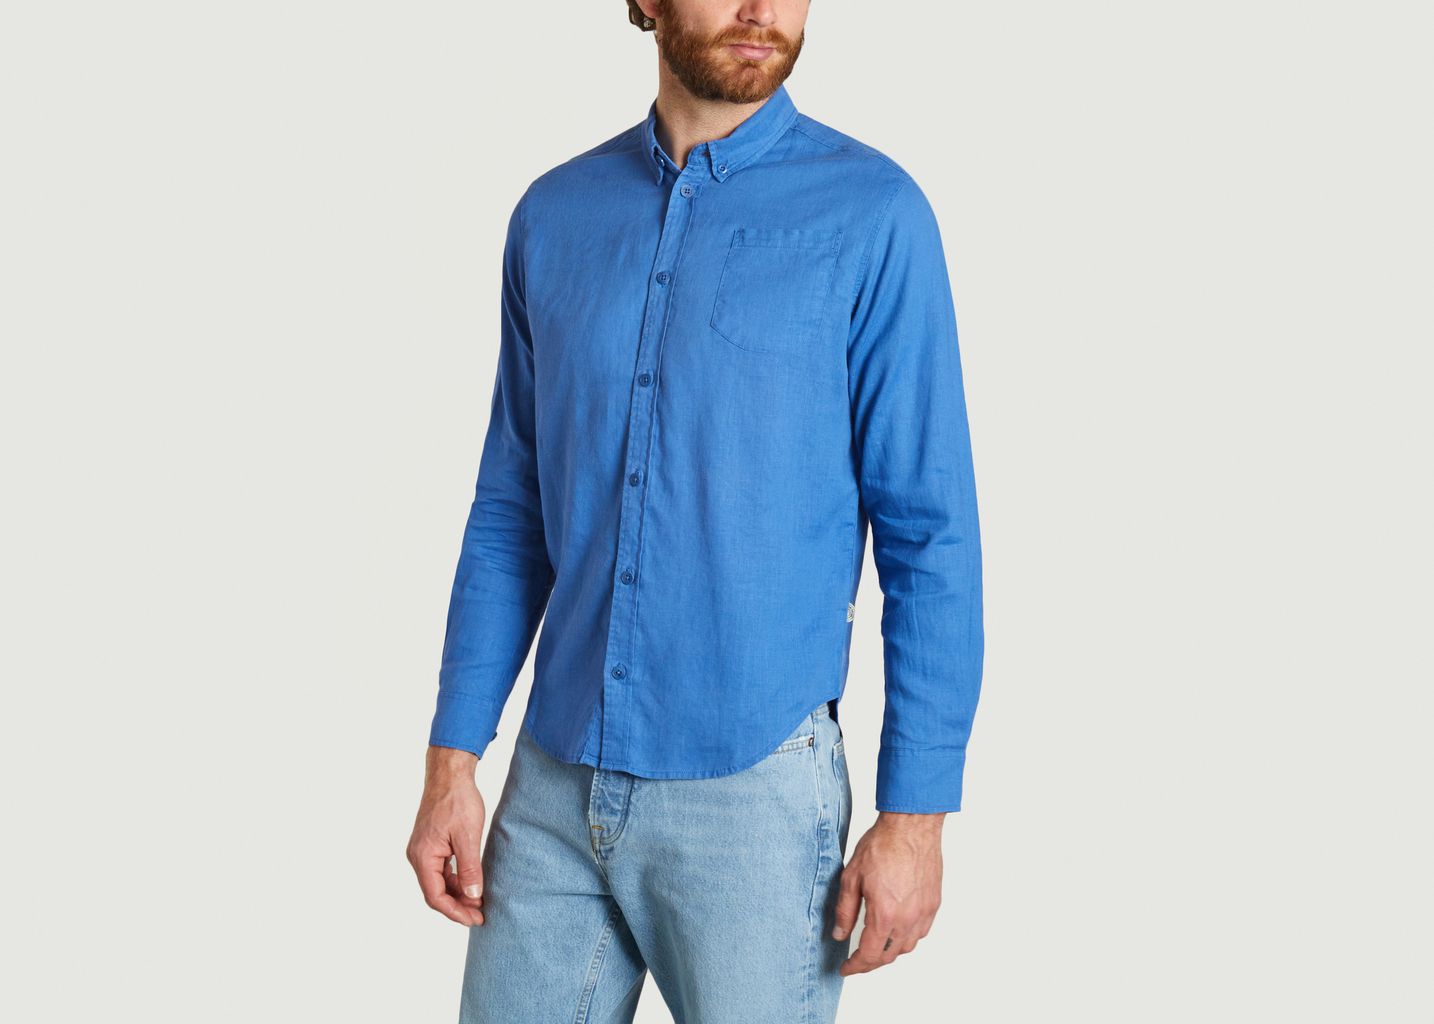 Hemp Ant blue shirt - Thinking Mu 